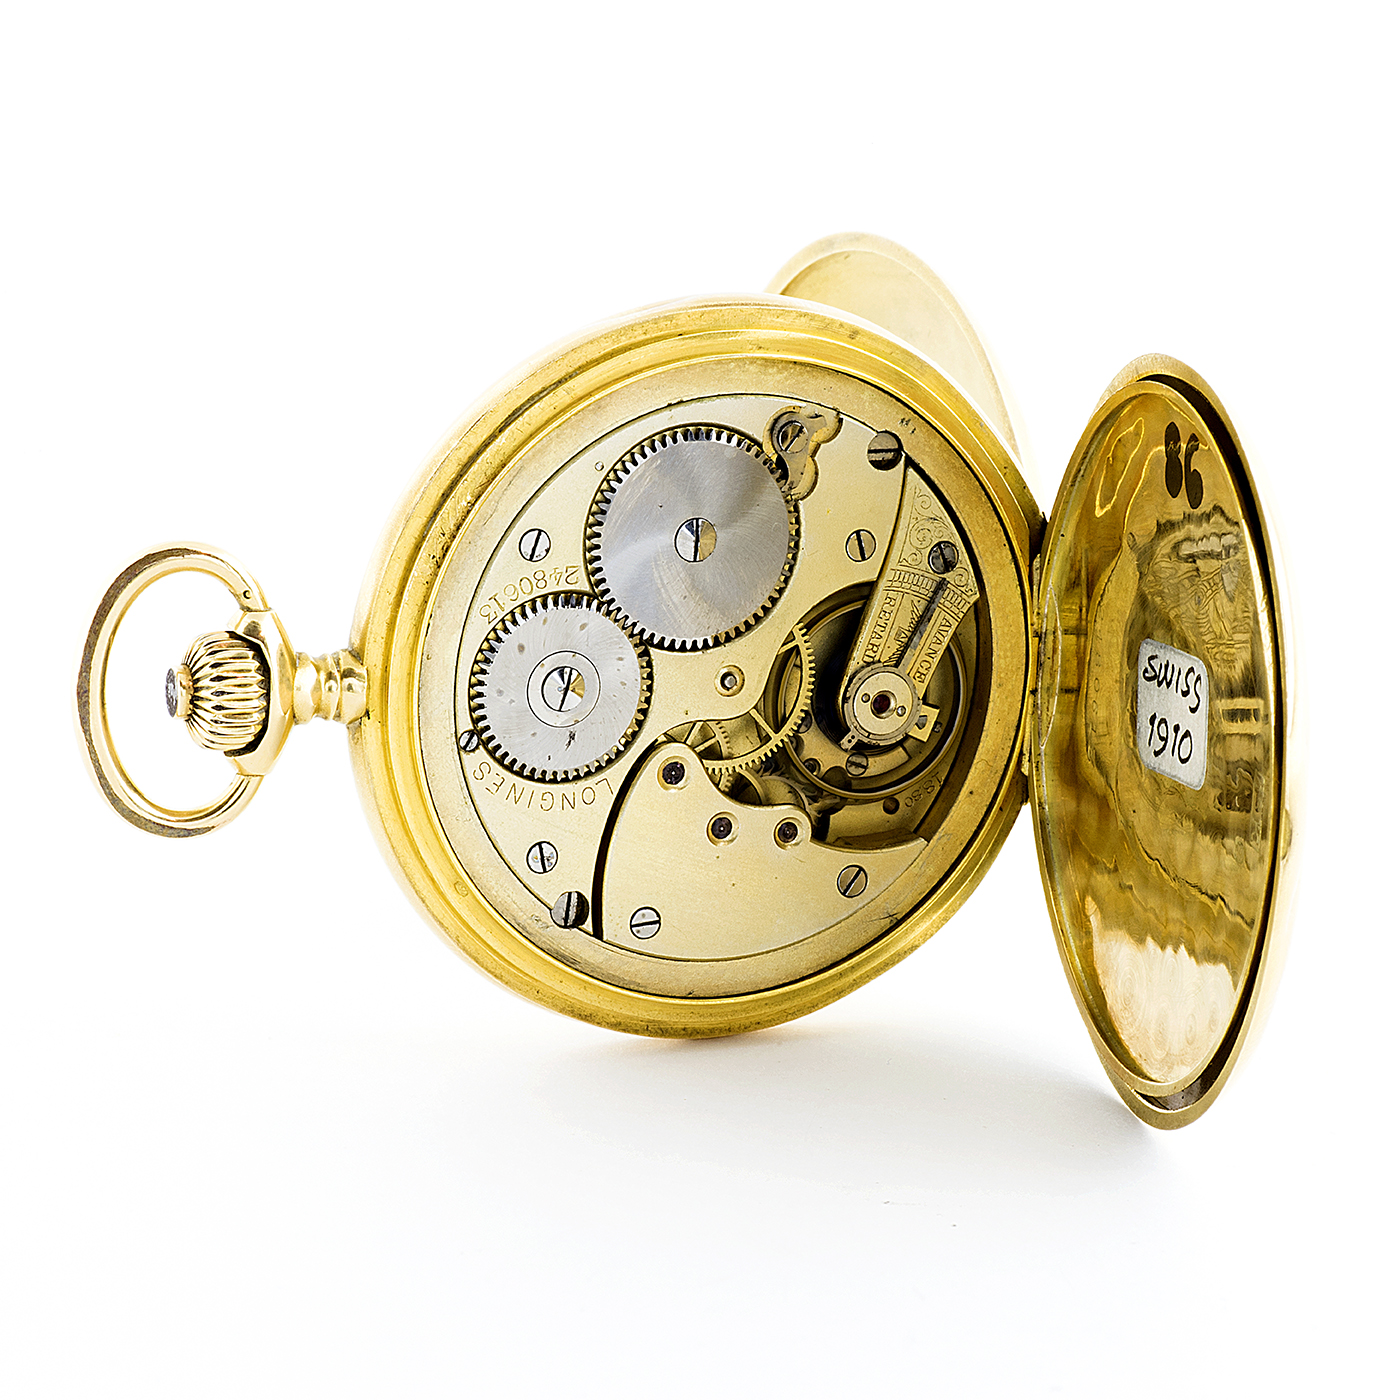 Imaginativo marca Validación Longines. Reloj de Bolsillo para caballero, saboneta y remontoir. Año 1910. Oro  18k. Subastas Fígaro